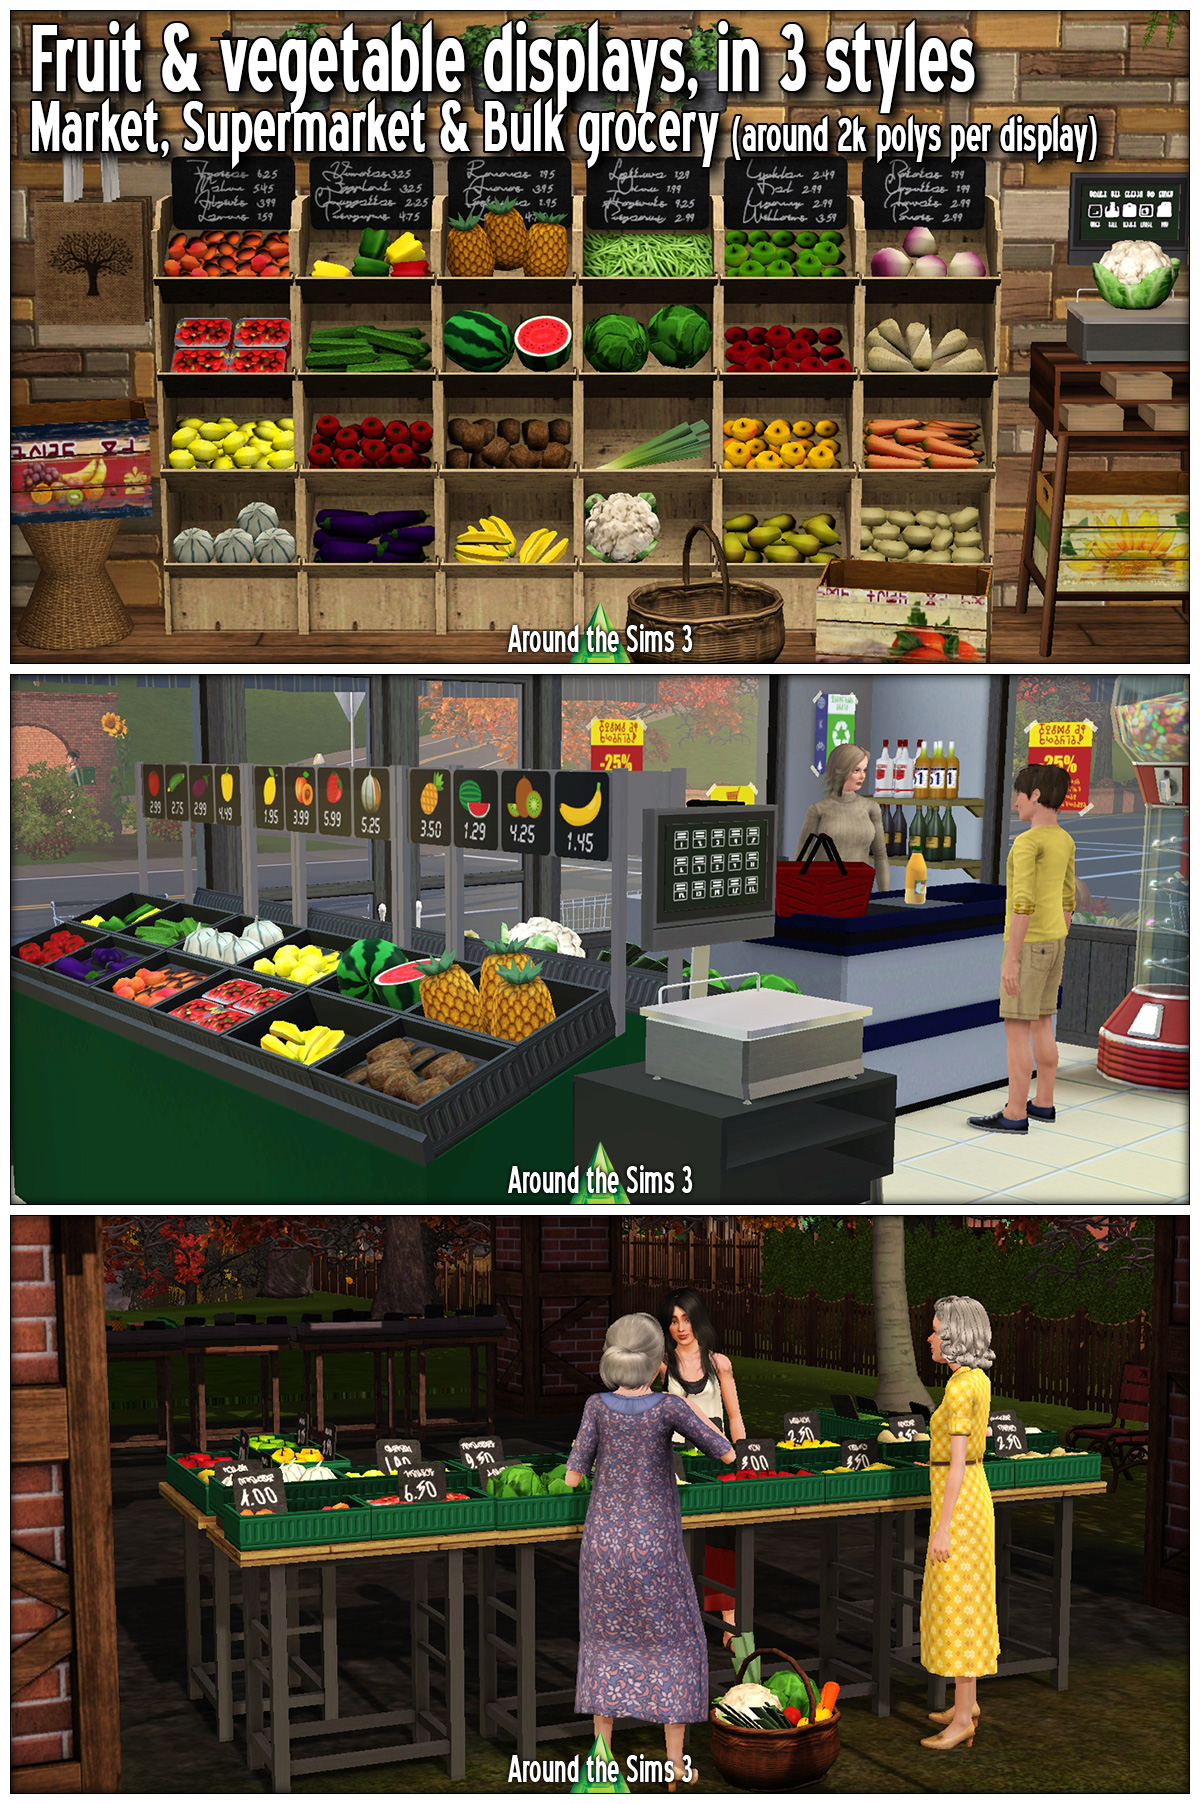 Around the Sims — aroundthesims: Around the Sims 4